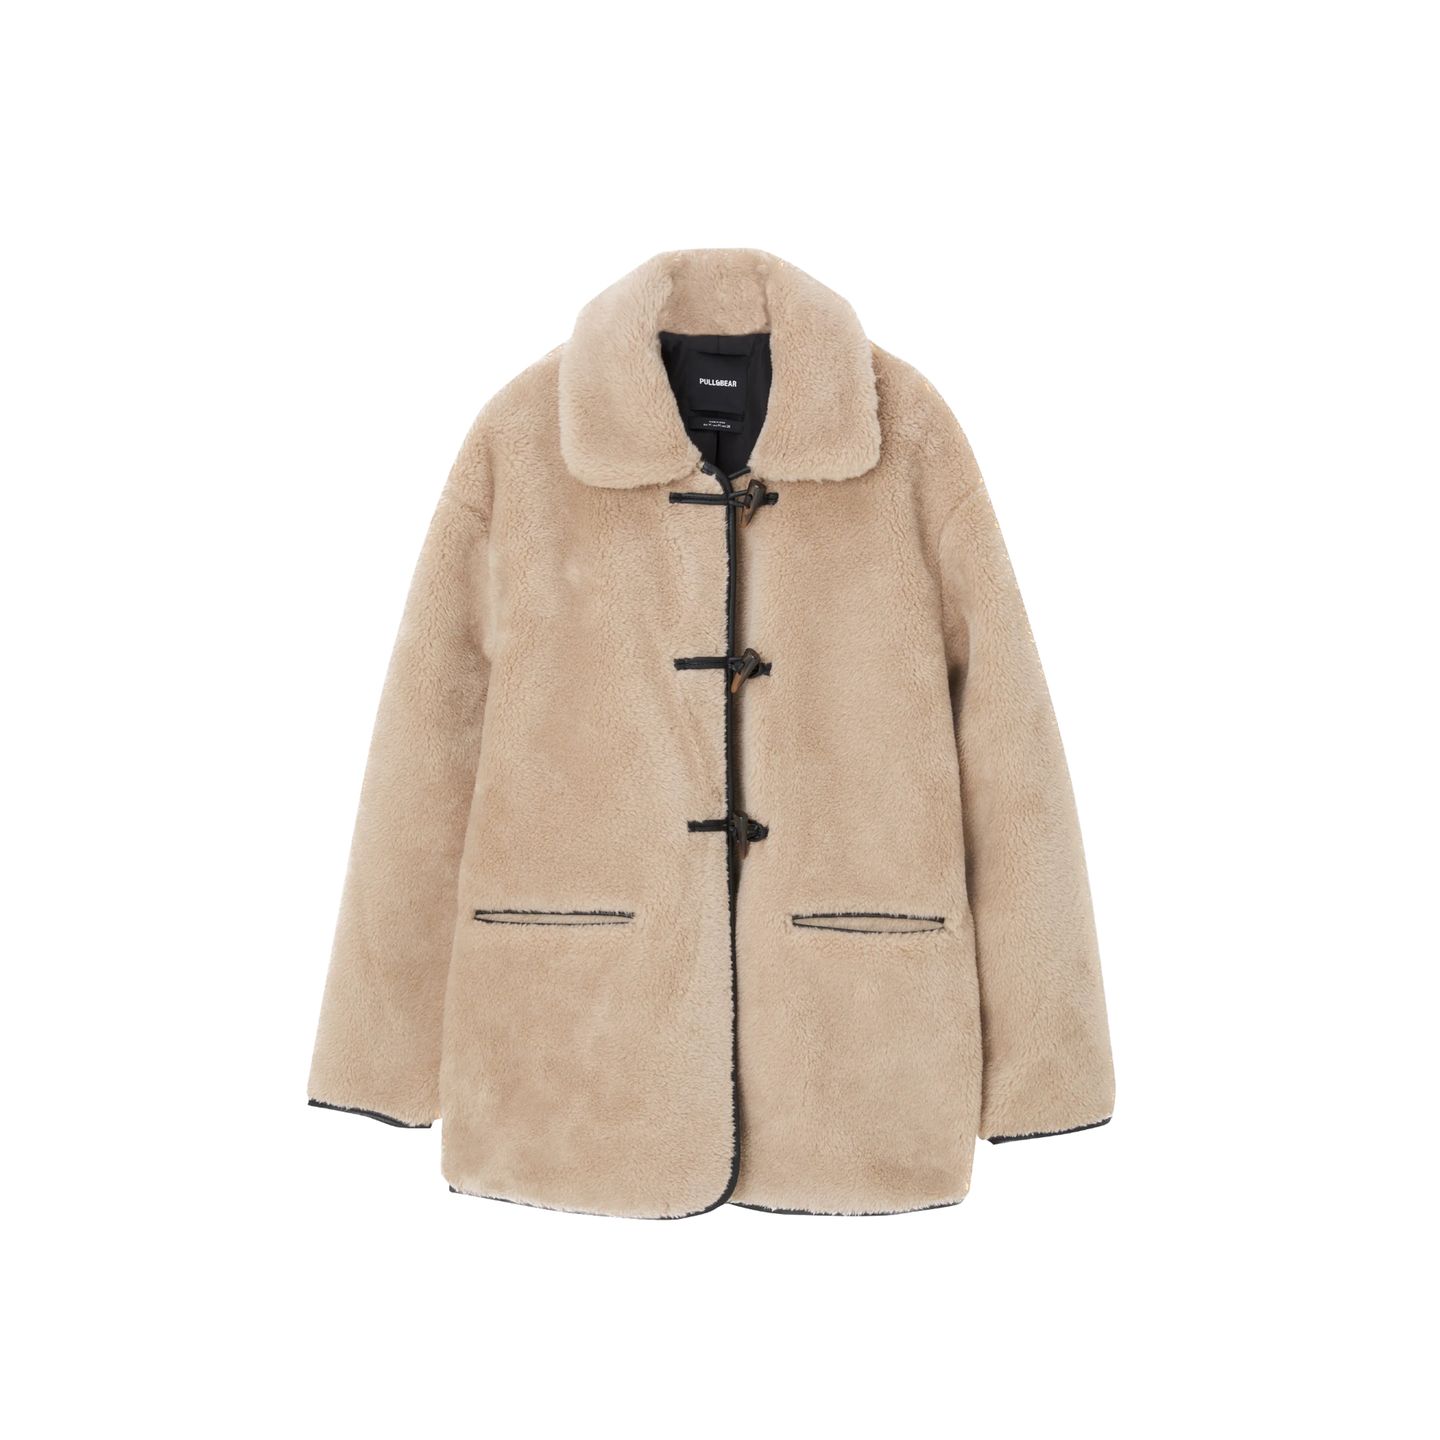 Wer nicht so viel Geld ausgeben, aber genauso stylisch aussehen möchte, wird bei Pull & Bear fündig. Hier ist die Fake-Fur-Jacke mit Knebelverschluss gerade im Sale und kostet über Zalando knapp 35 Euro. 